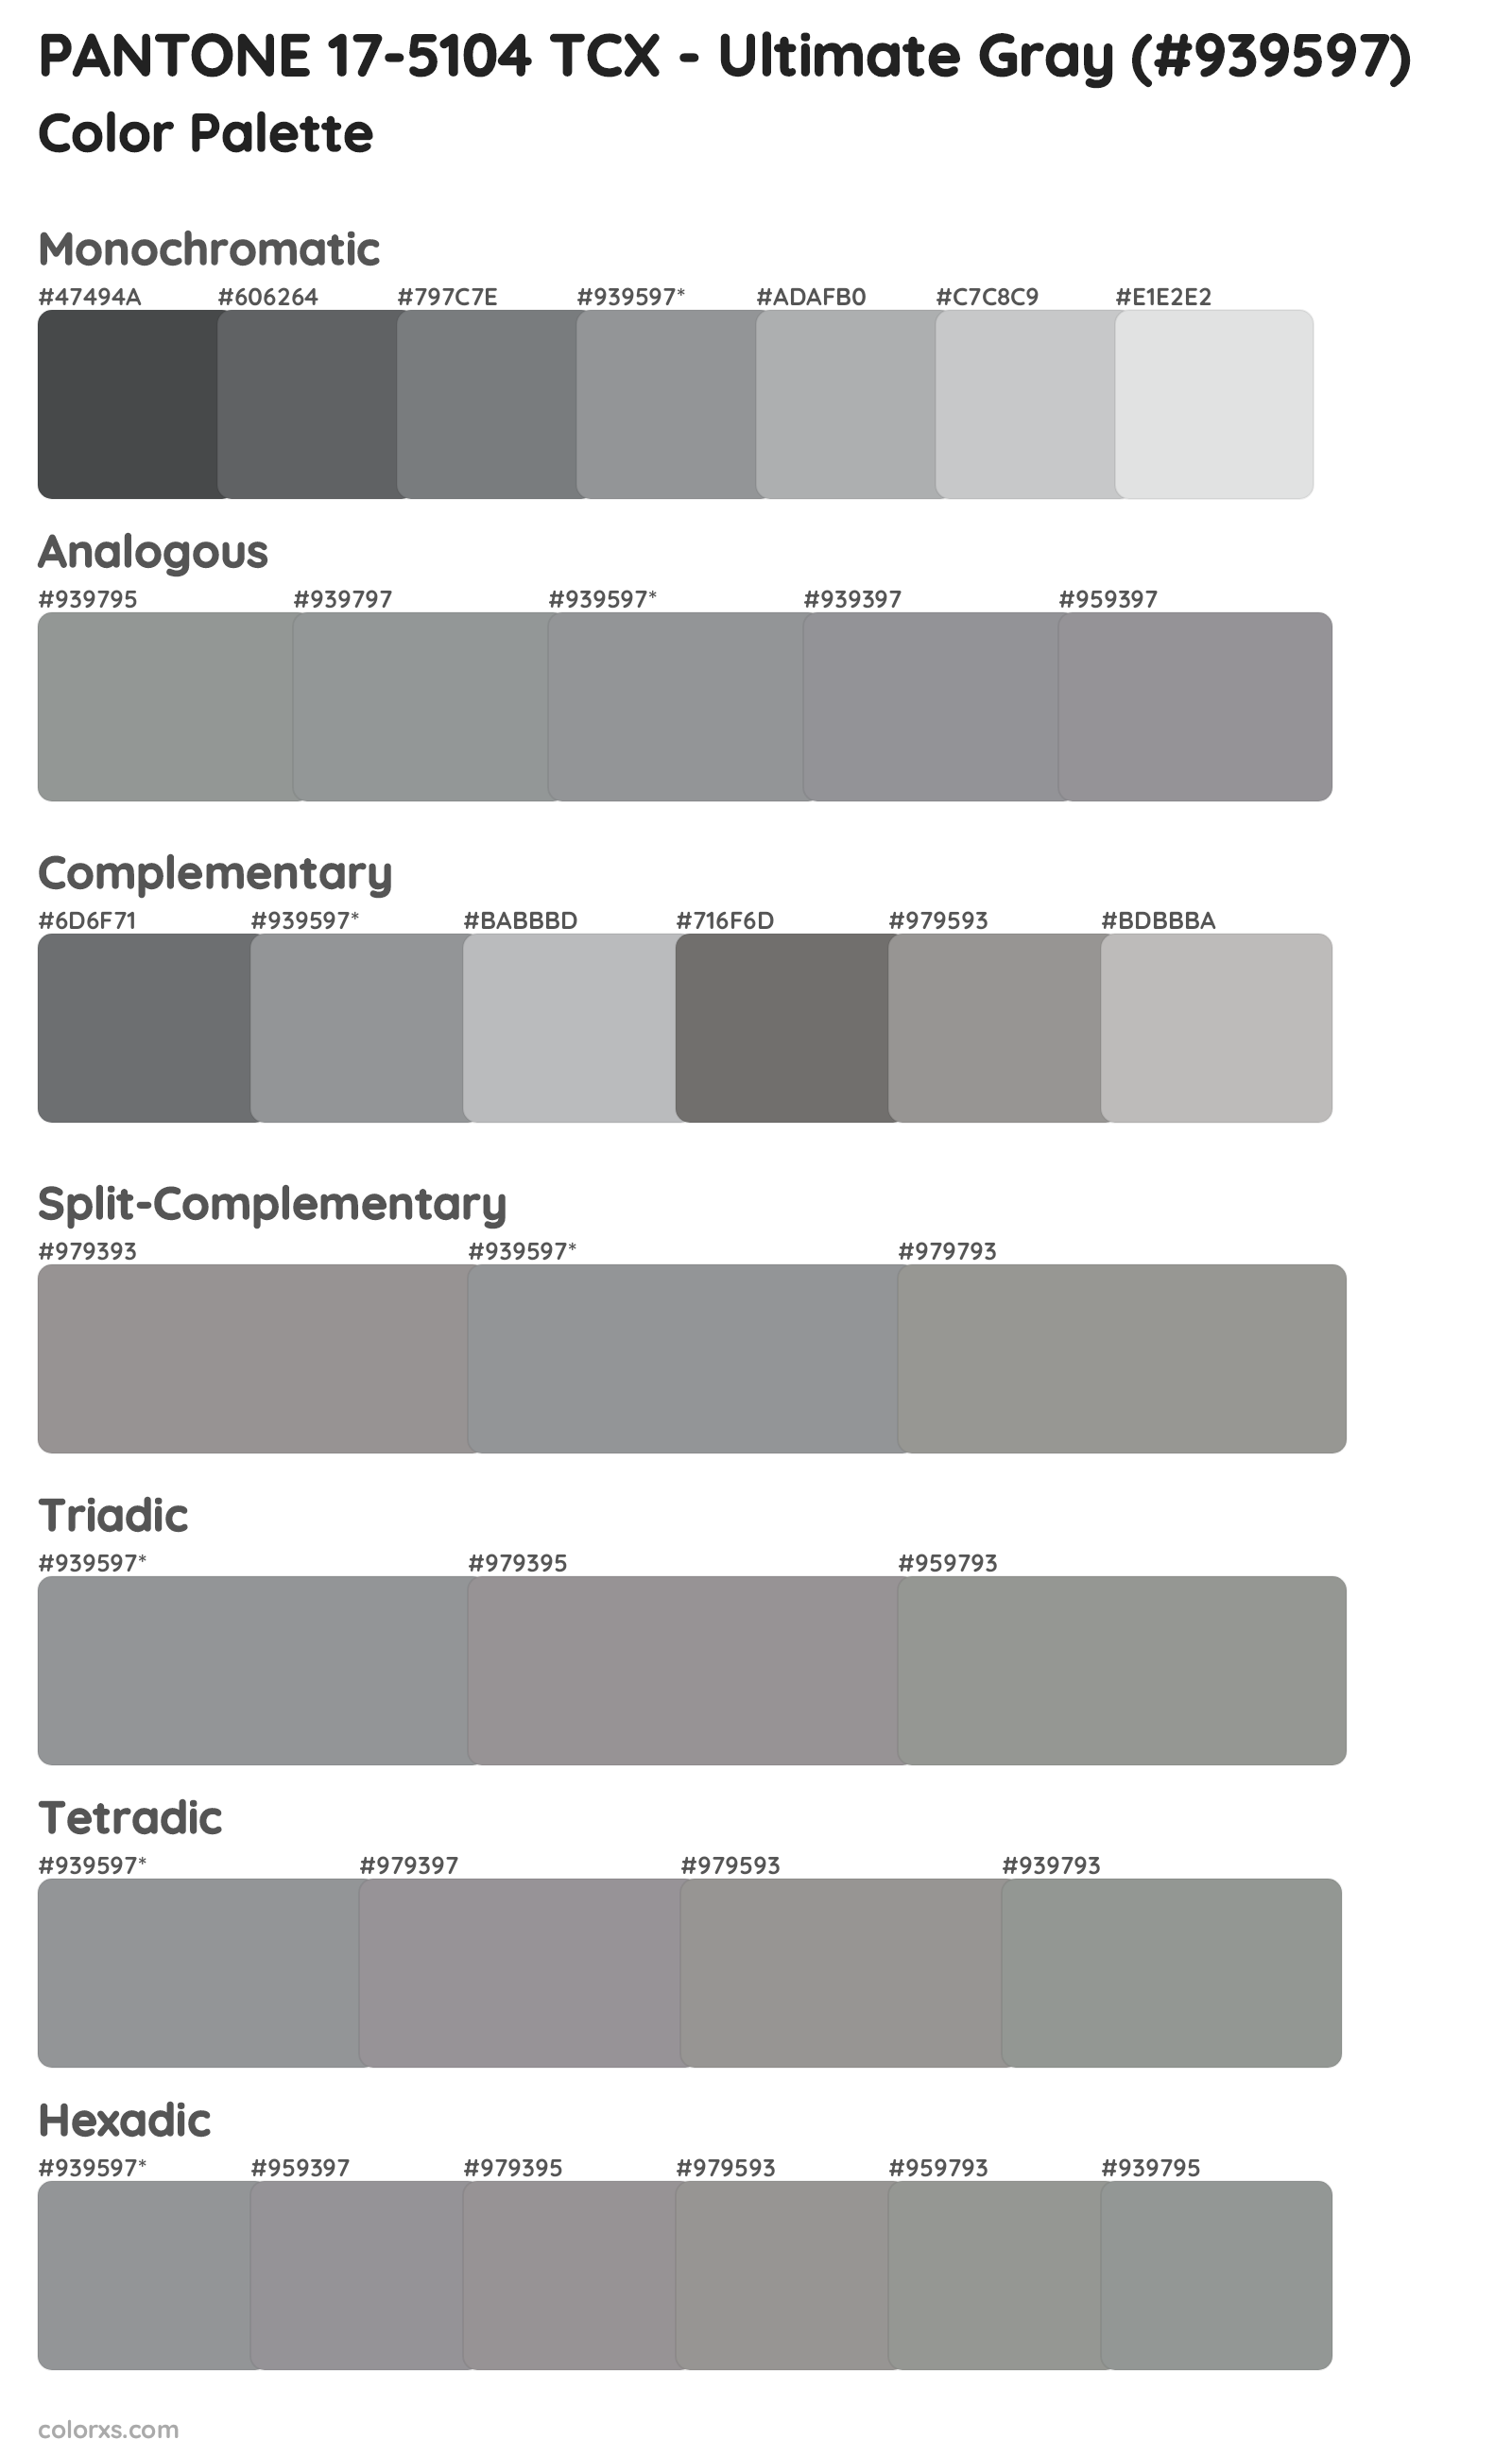 PANTONE 17-5104 TCX - Ultimate Gray Color Scheme Palettes